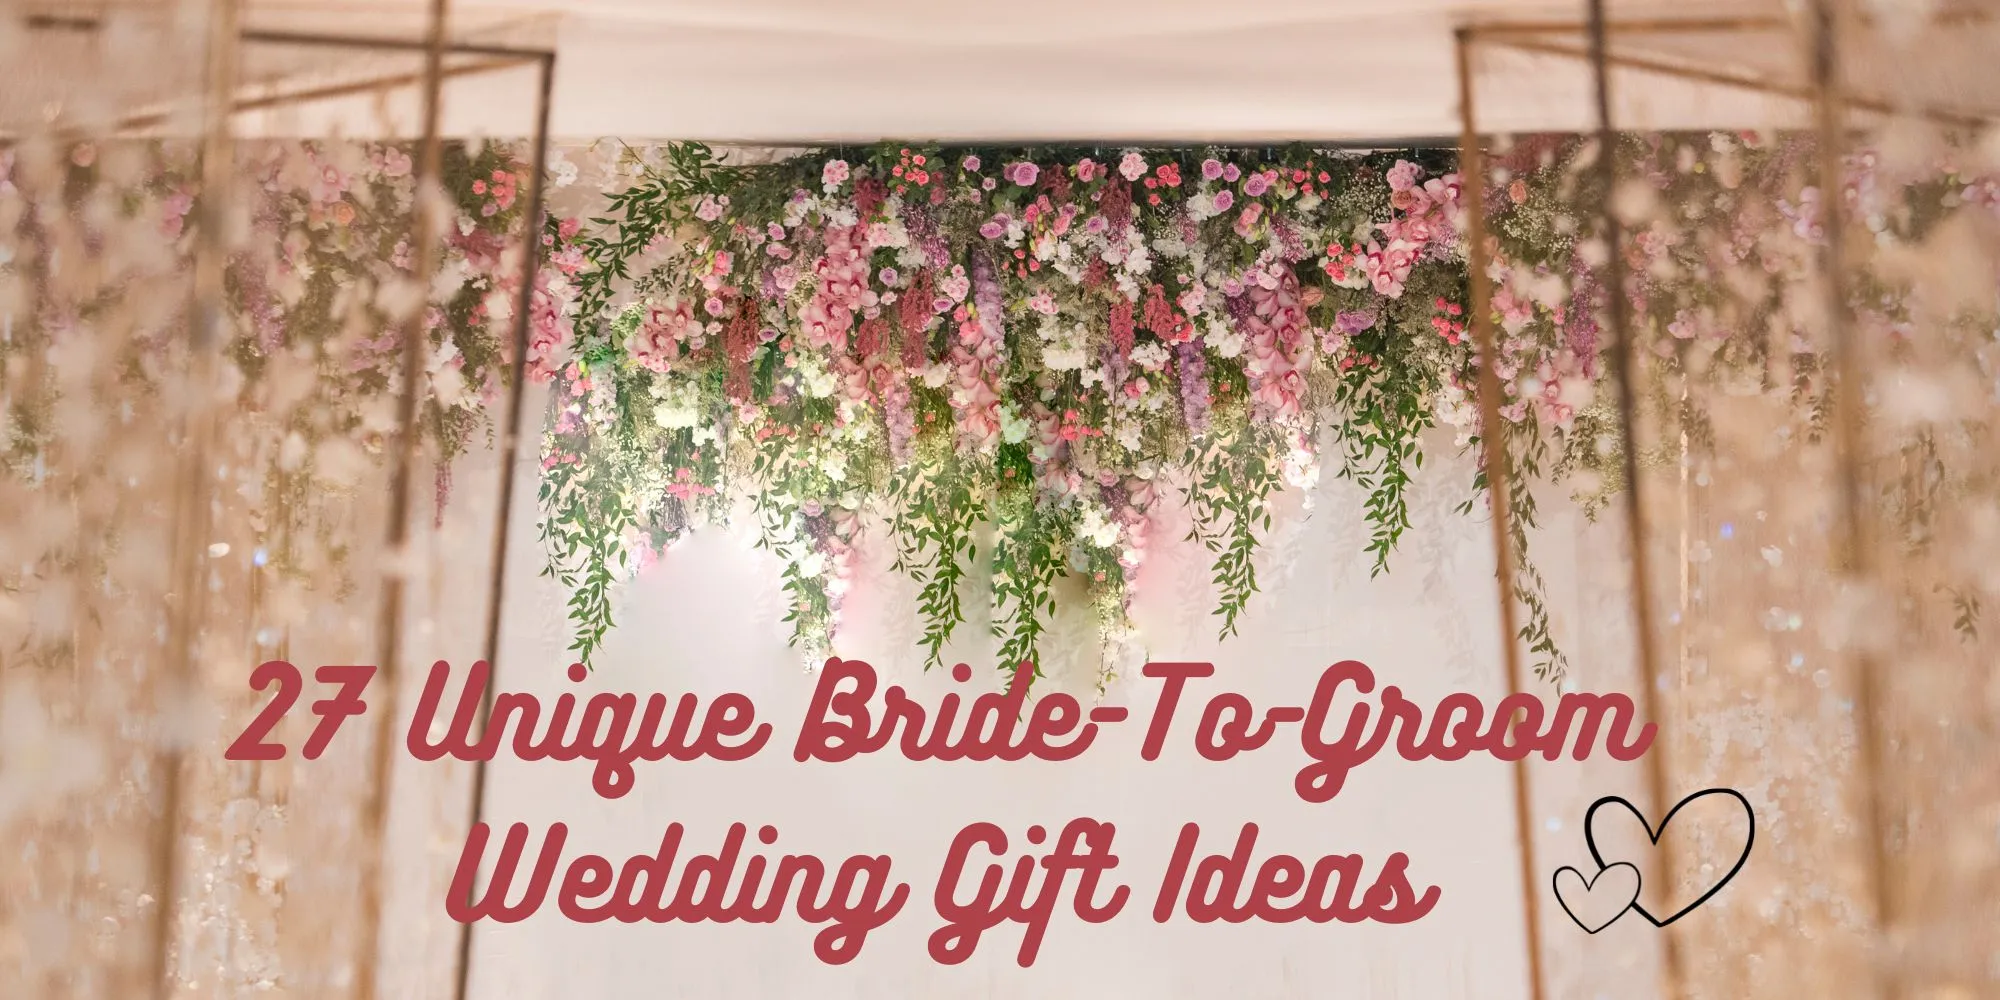 26 Unique Bride-to-Groom Wedding Gift Ideas